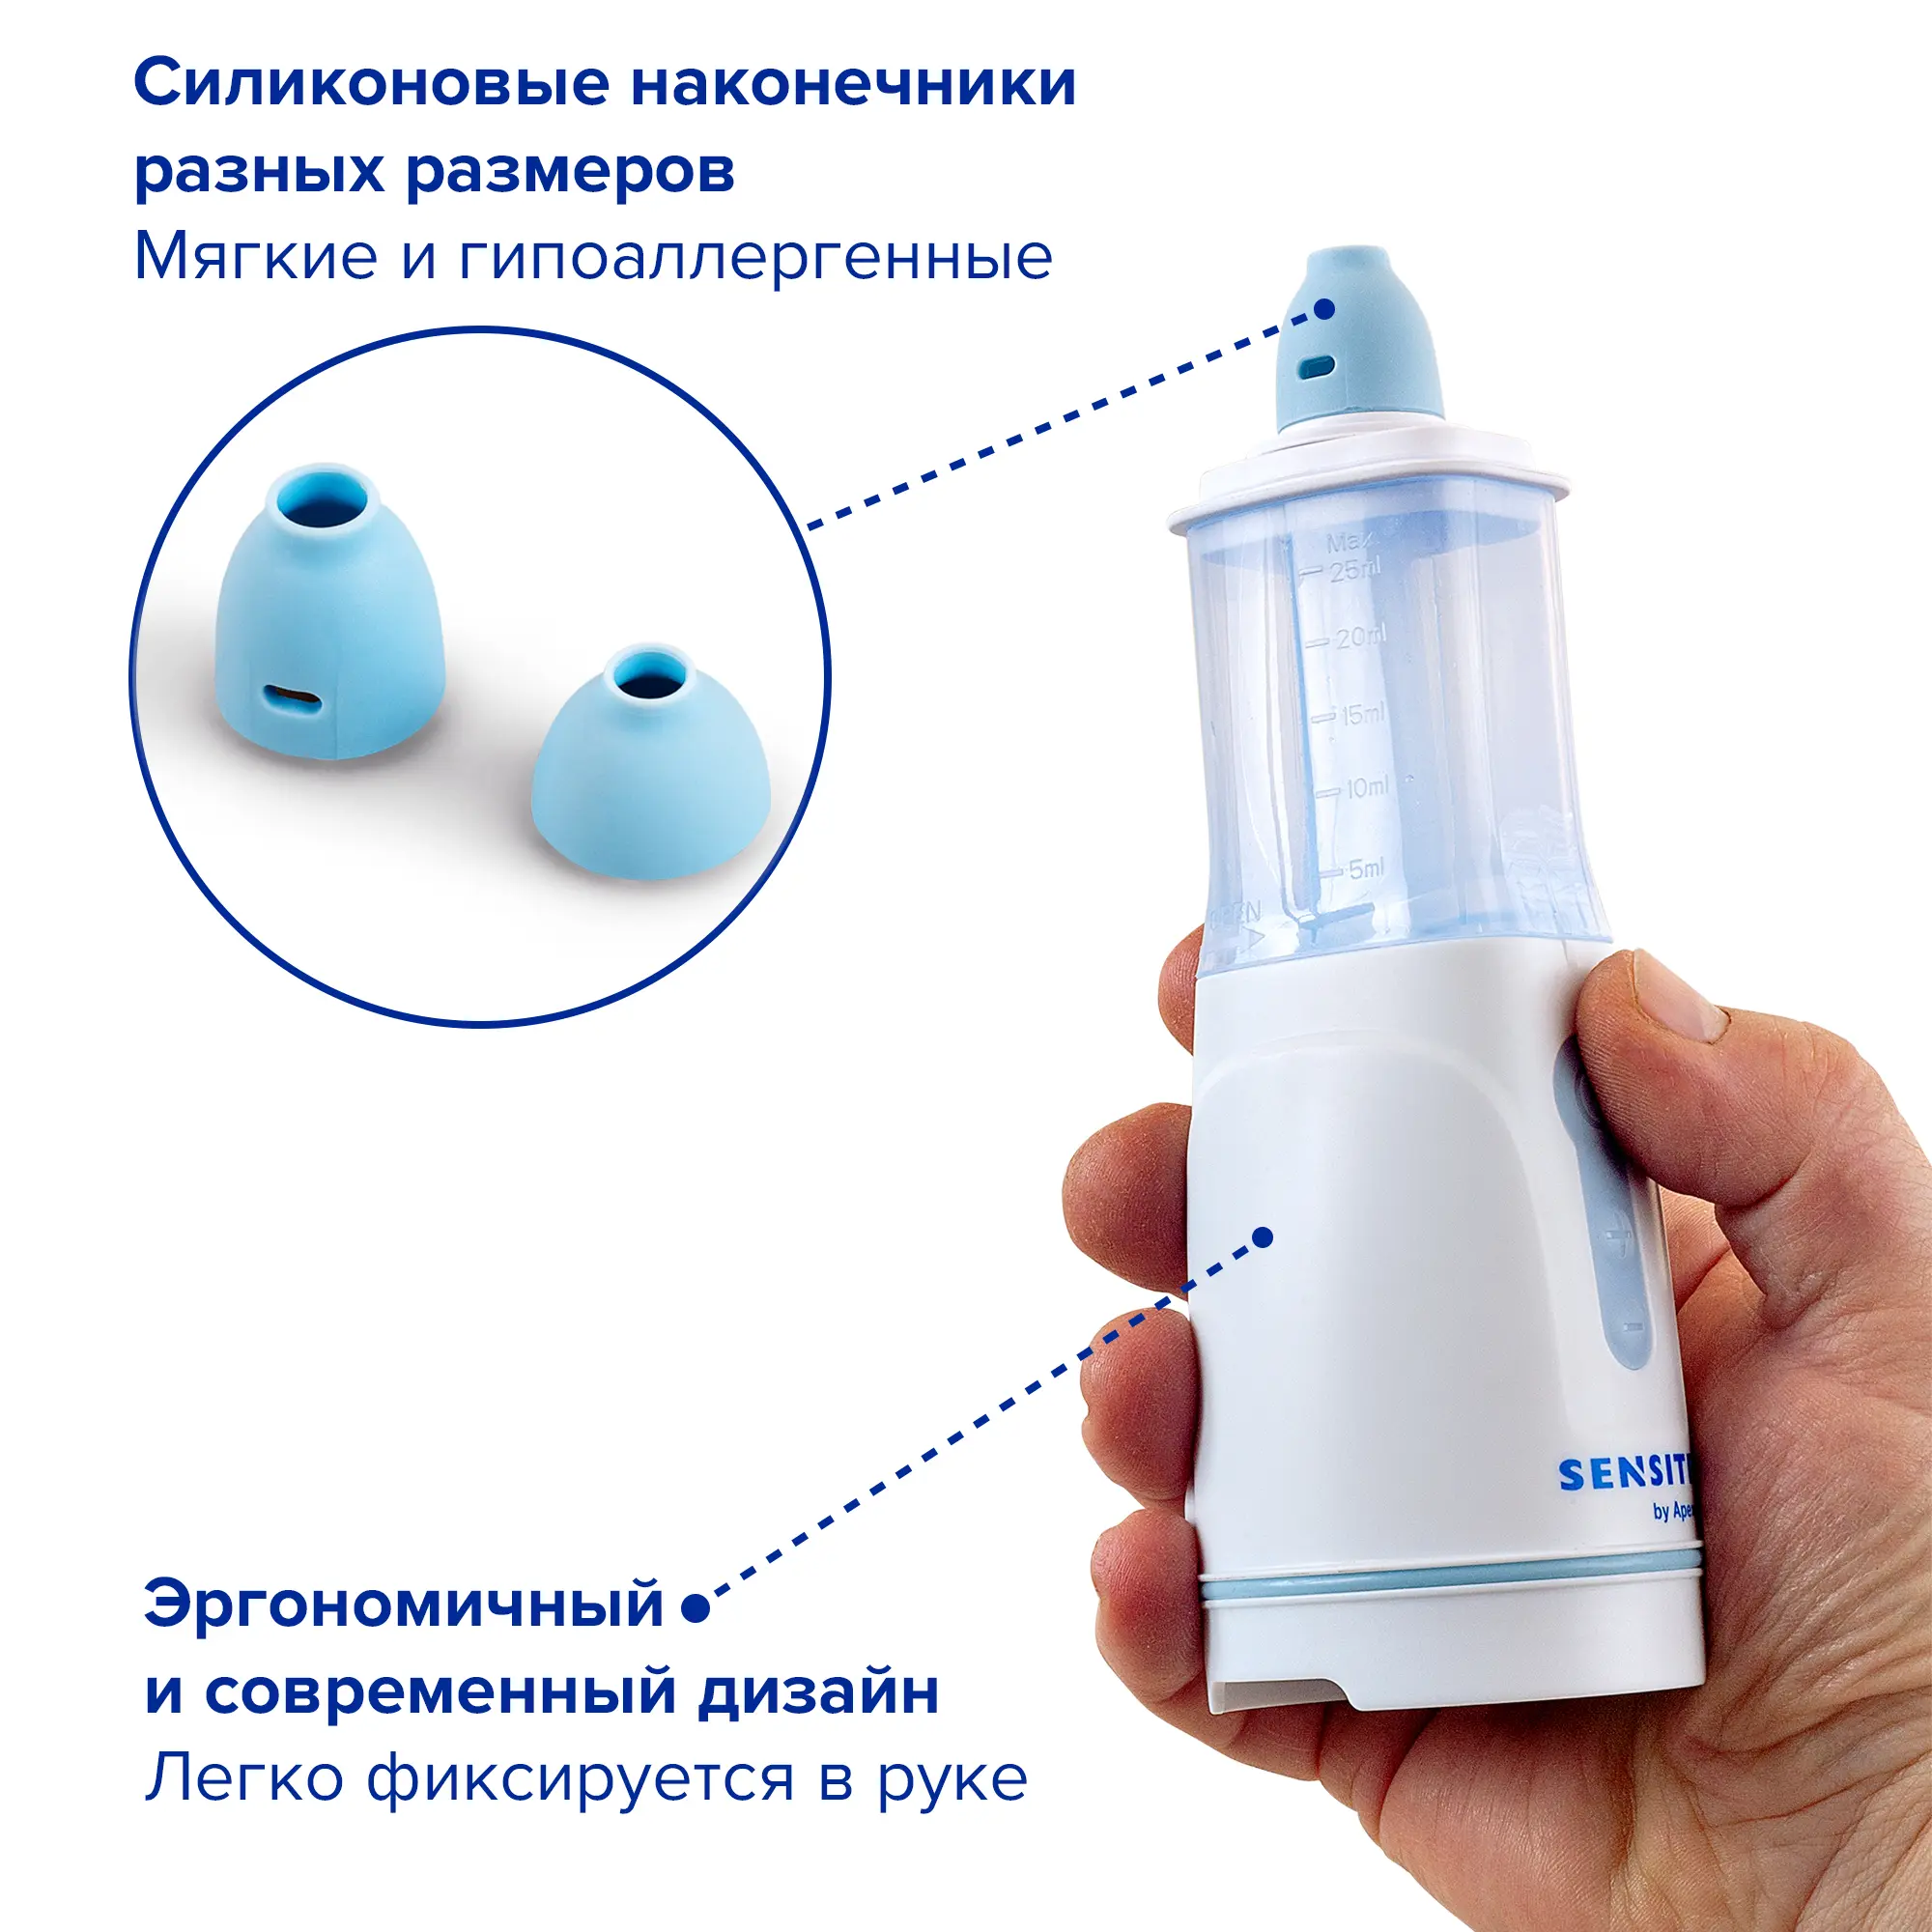 Устройство для промывания полости носа и носоглотки (ирригатор), SENSITEC 